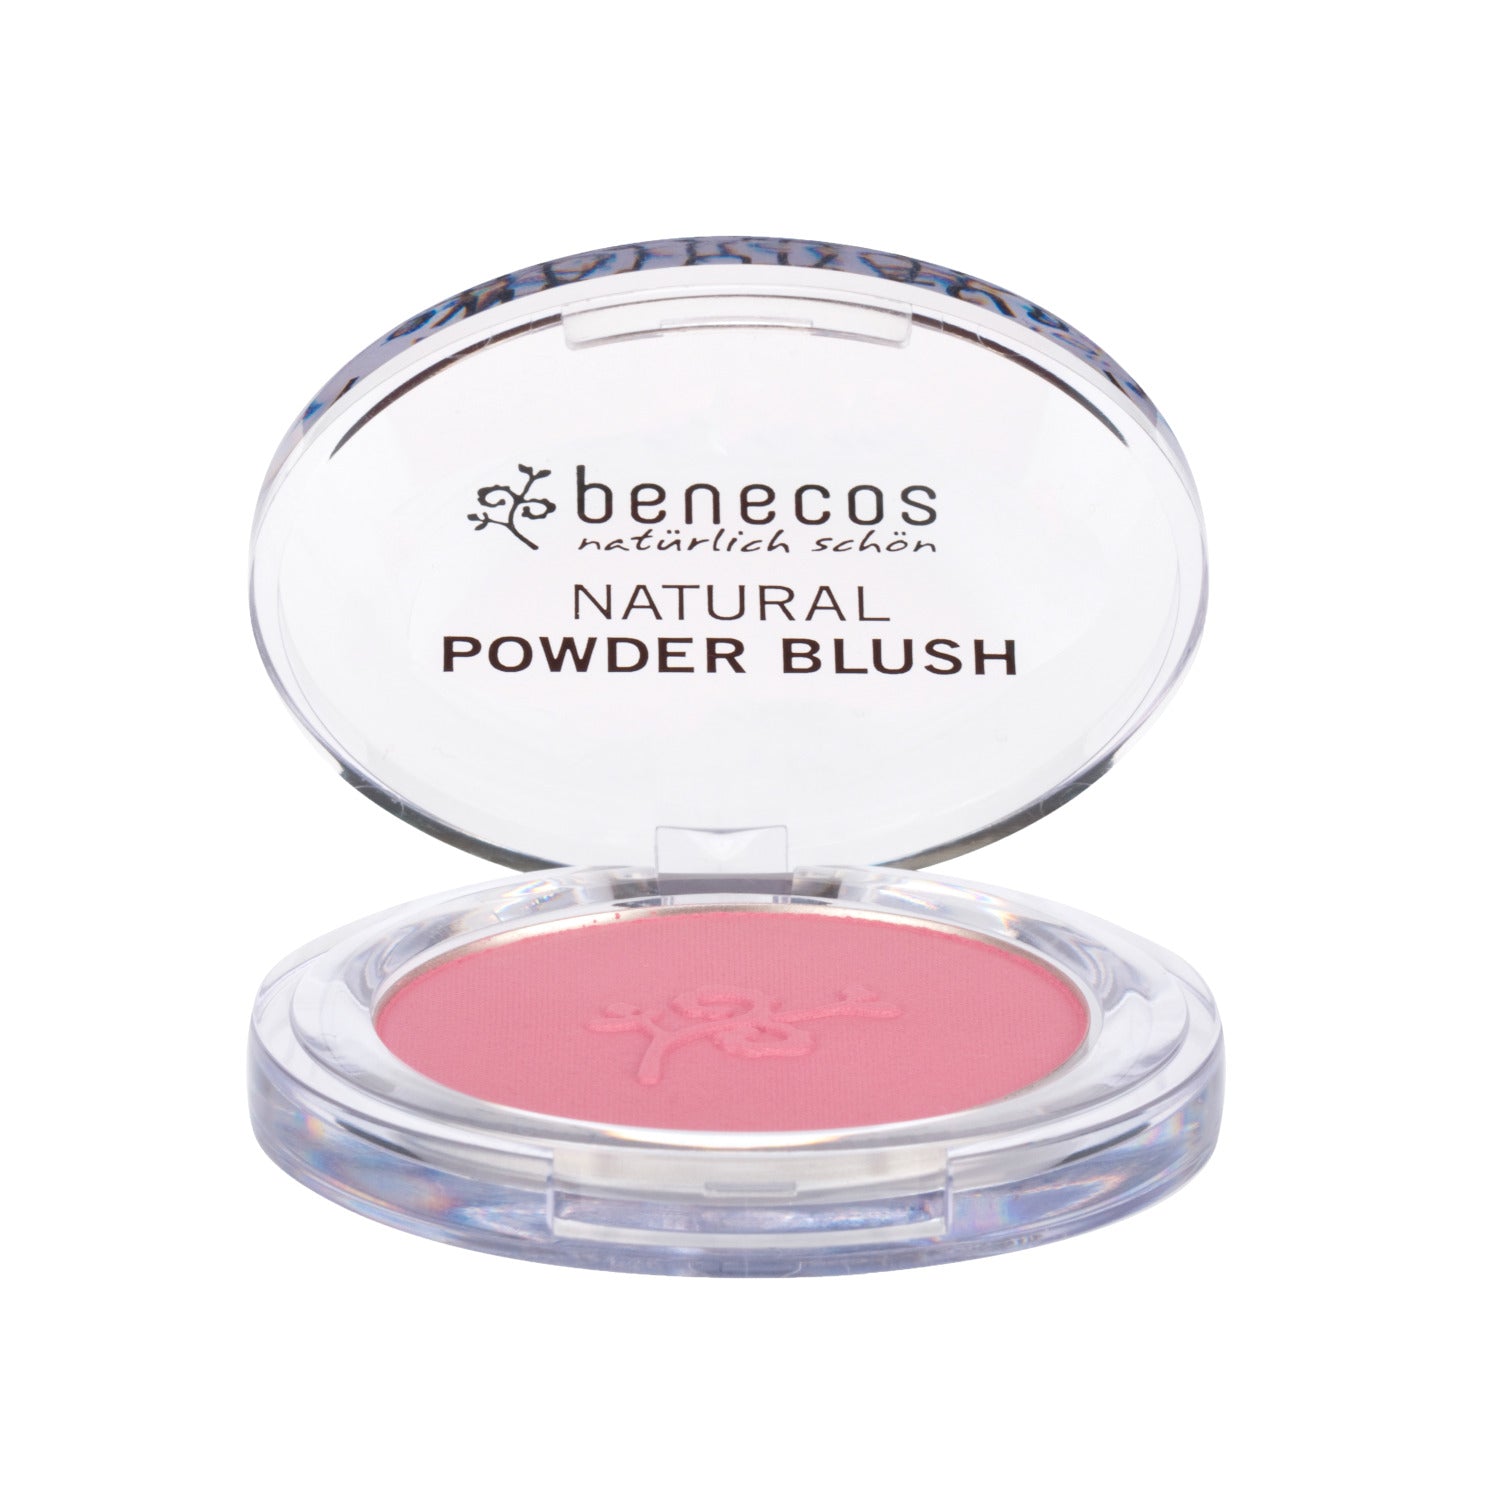 Benecos-natural powder blush-mallow rose